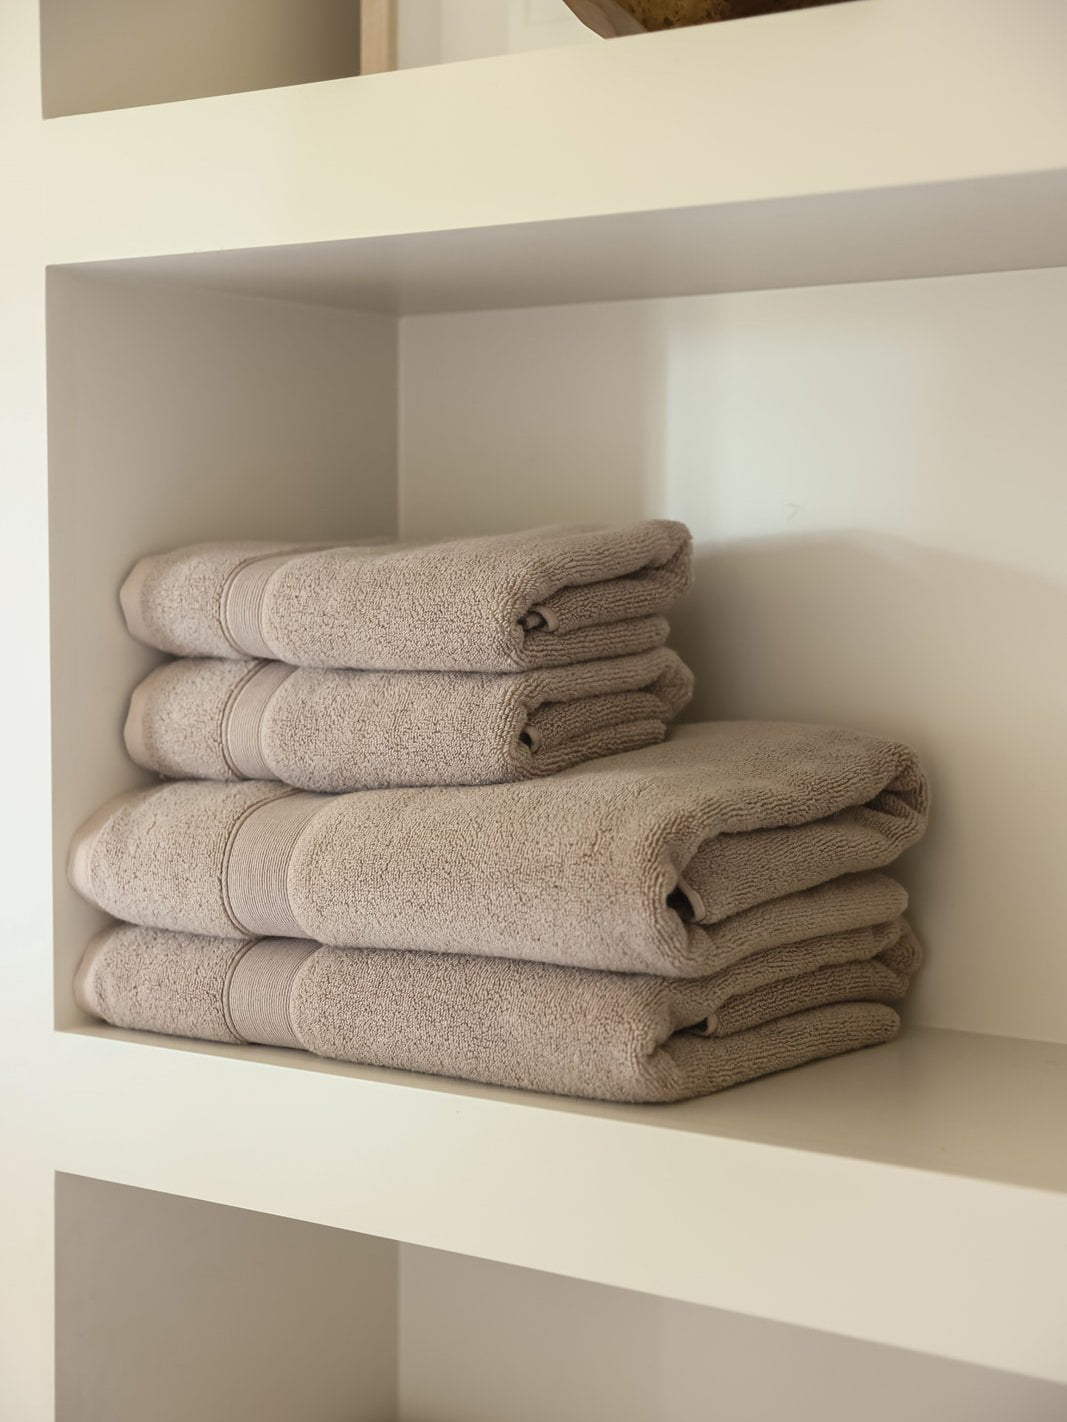 Sand hand towels and bath towels folded on shelf 